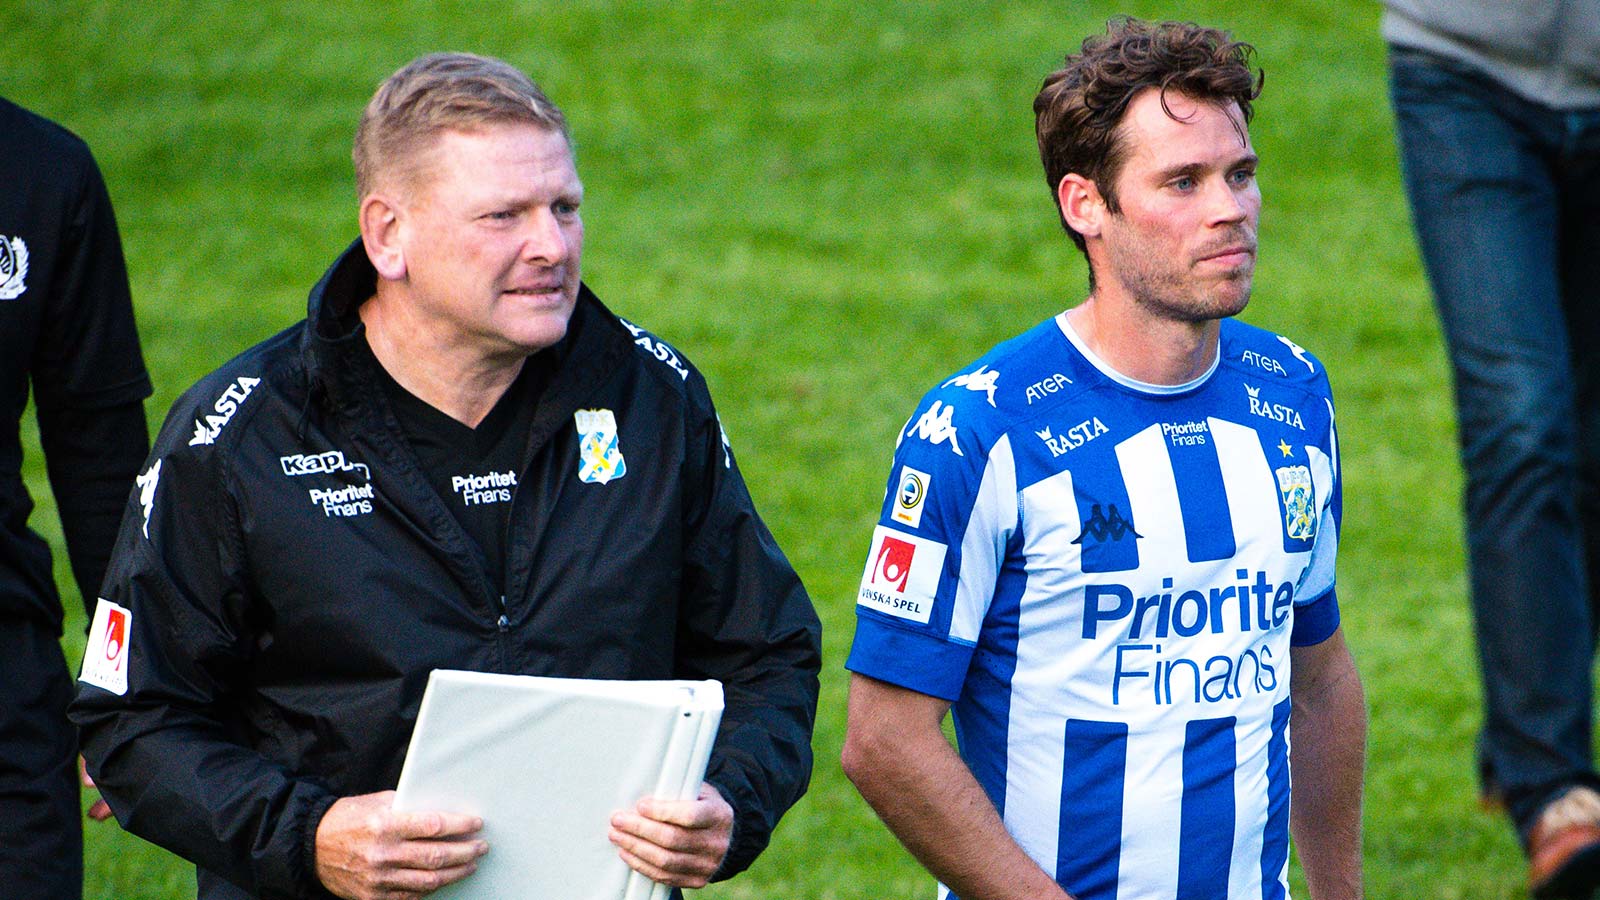 180611 IFK Göteborgs assisterande tränare Alf Westerberg och Emil Salomonsson efter en träningsmatch i fotboll mellan en dalakombination och IFK Göteborg den 11 juni 2018 i Nyhammar.